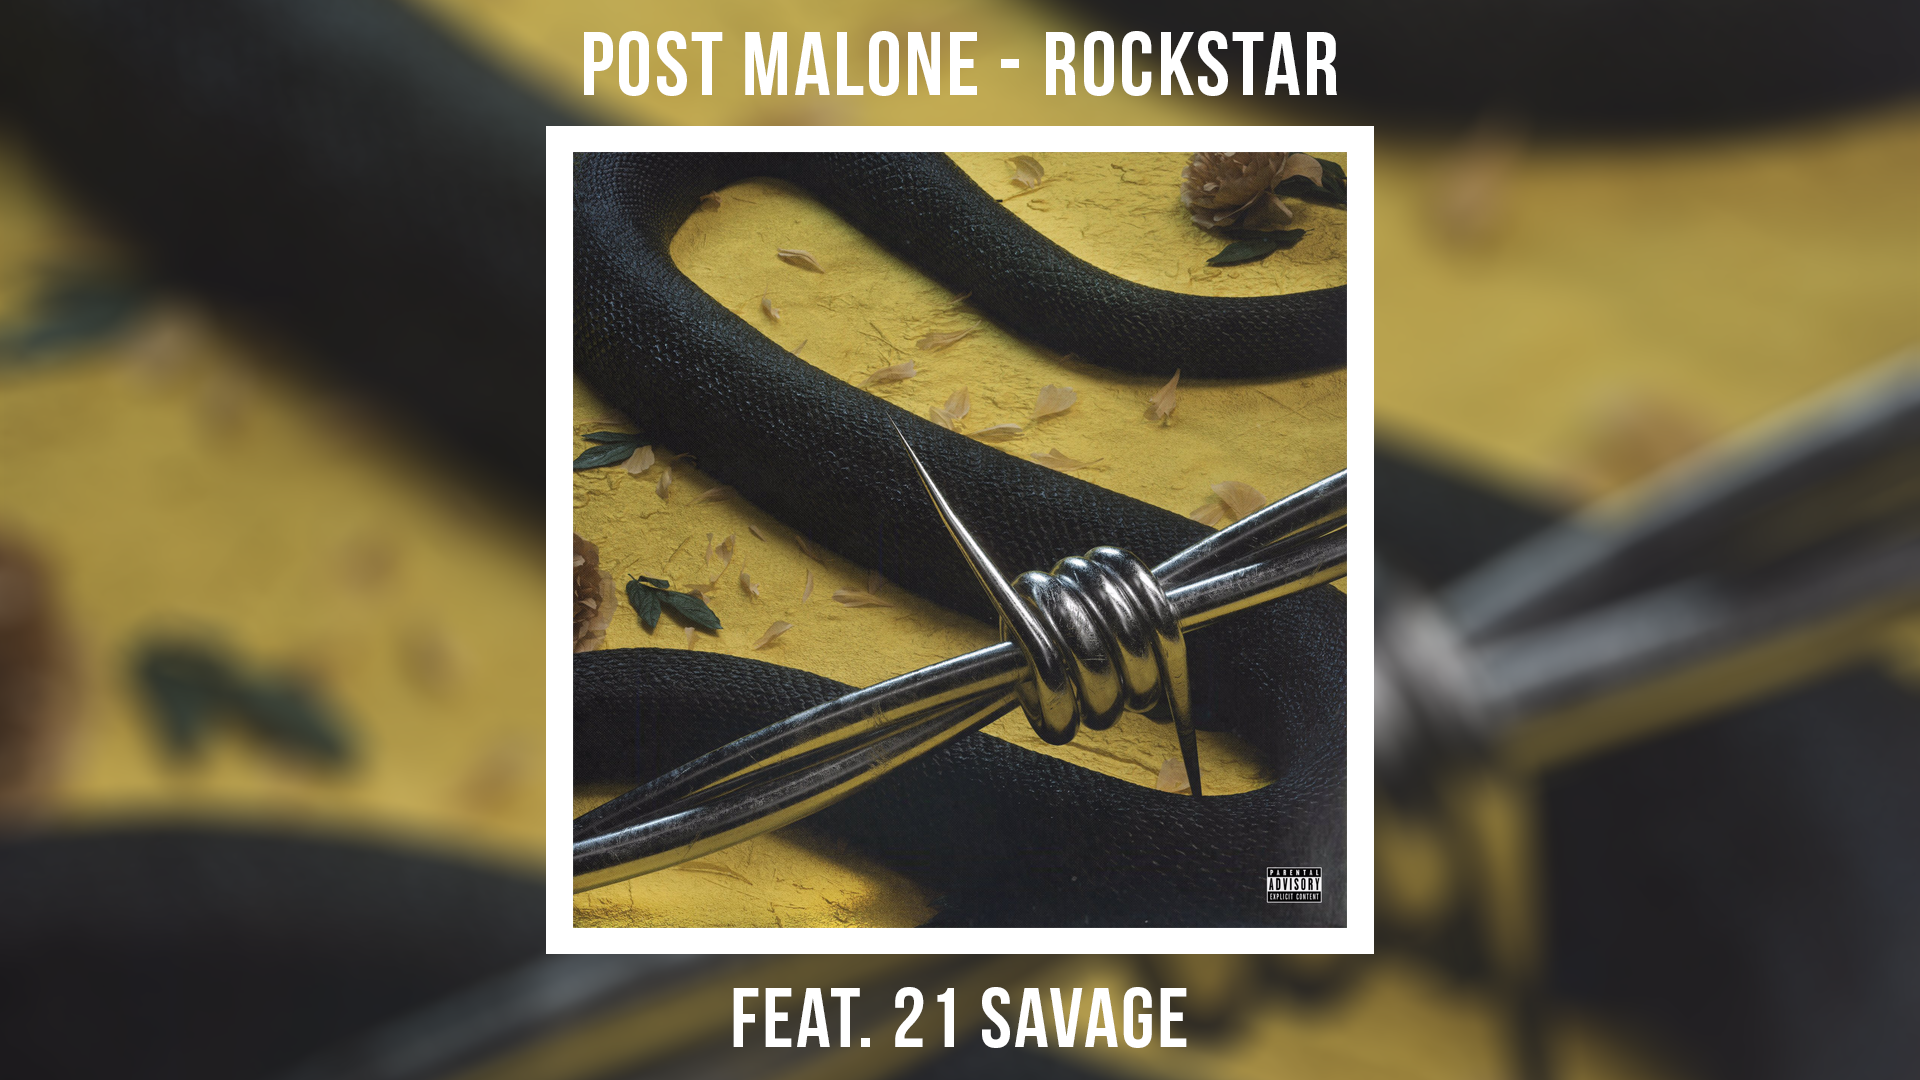 Post malone 21 savage rockstar. Post Malone Rockstar обложка. Rockstar Post Malone 21 Savage обложка. Post Malone Rockstar ft. 21 Savage обложка.